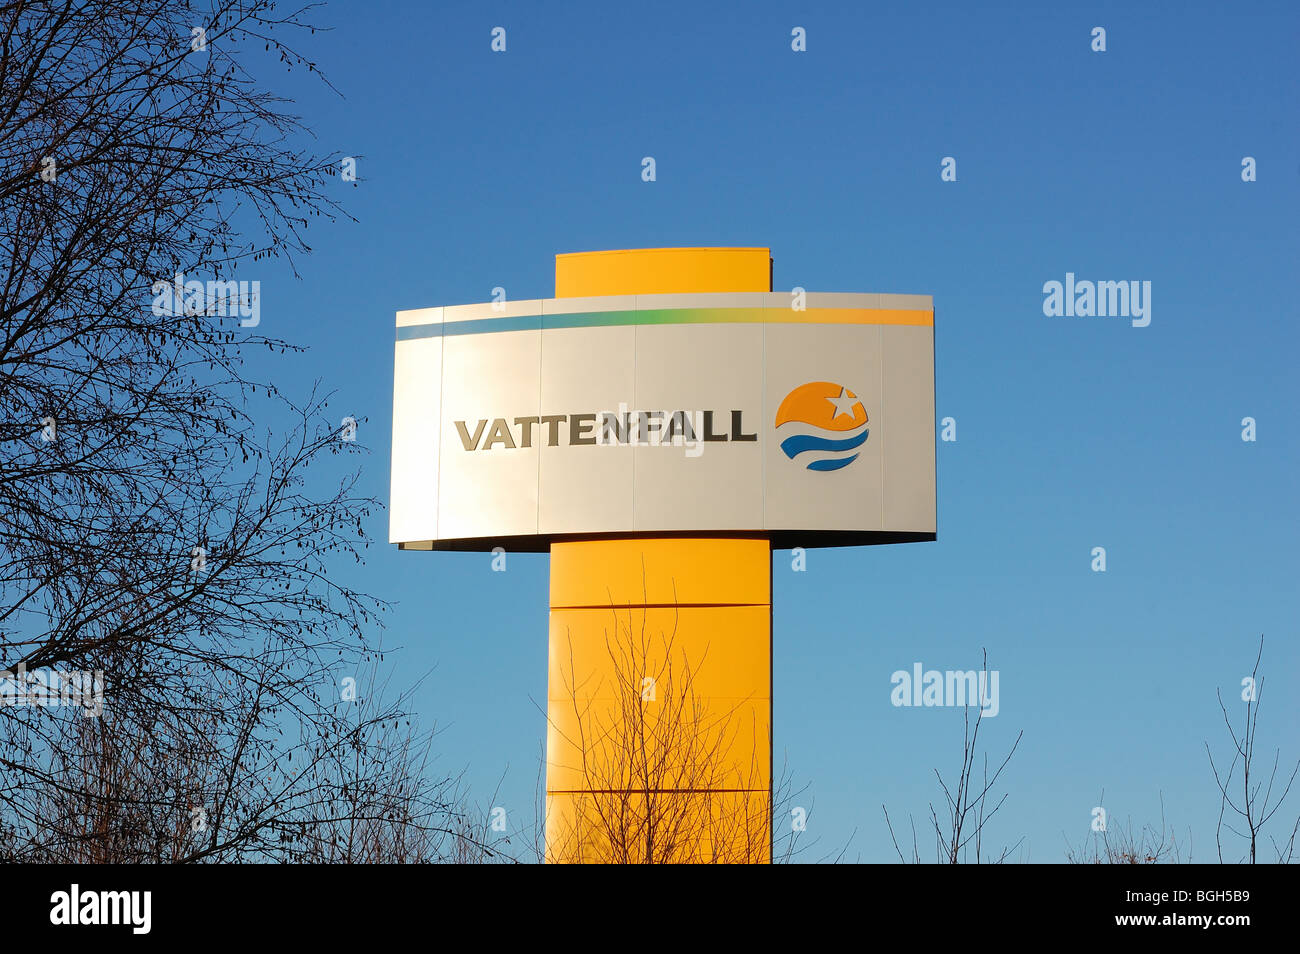 Vattenfall suède signe Banque D'Images